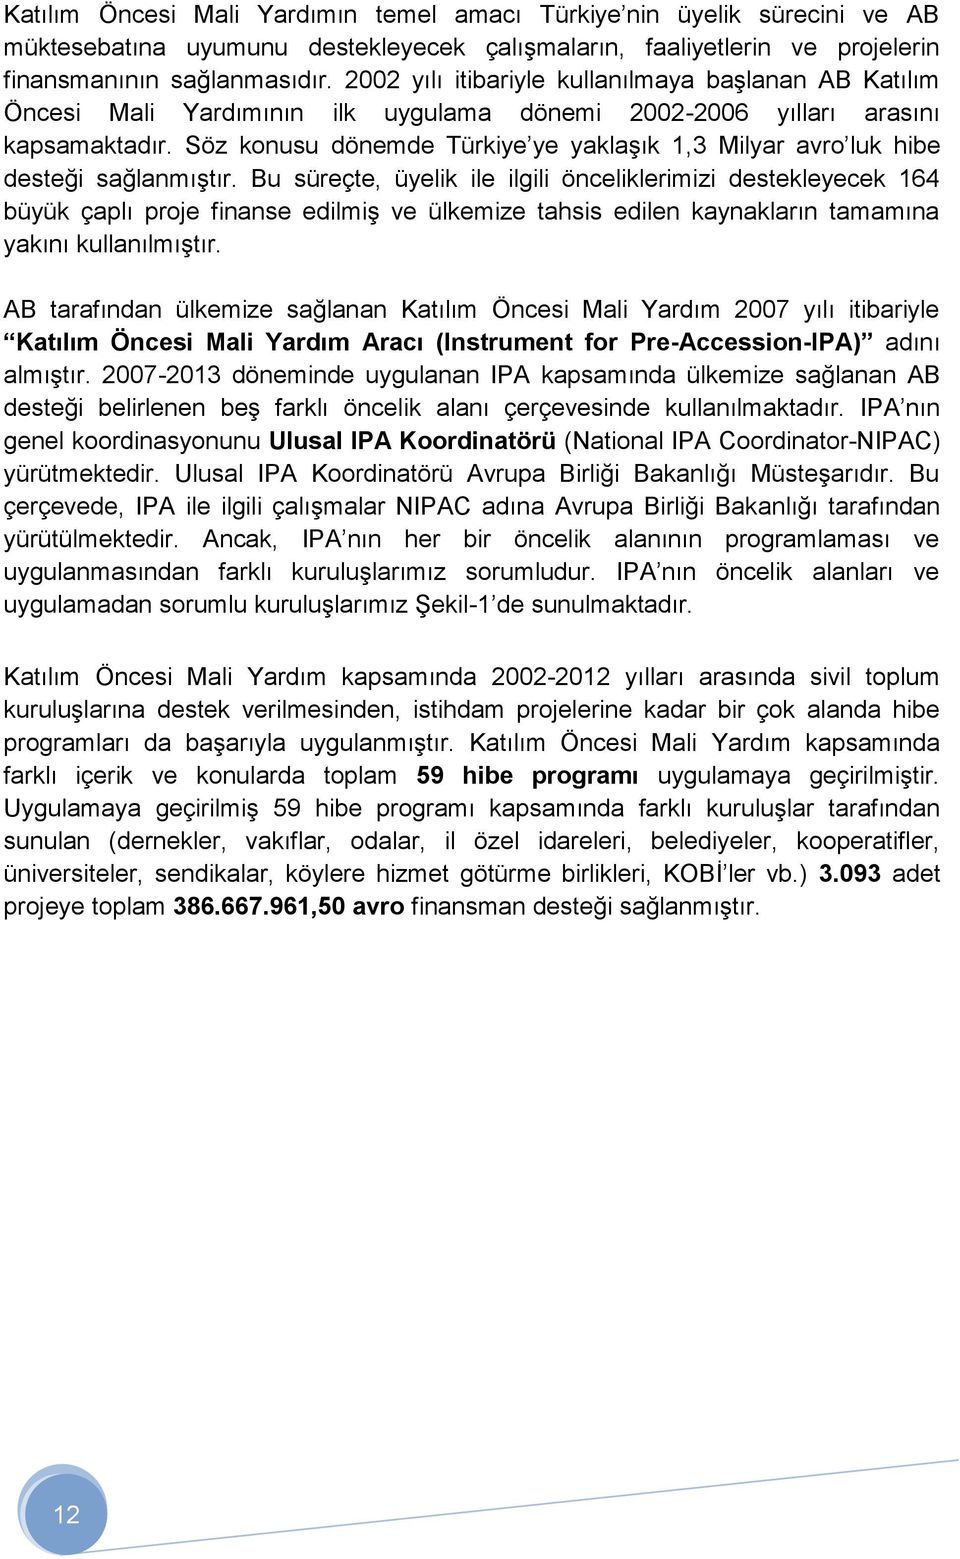 Söz konusu dönemde Türkiye ye yaklaşık 1,3 Milyar avro luk hibe desteği sağlanmıştır.